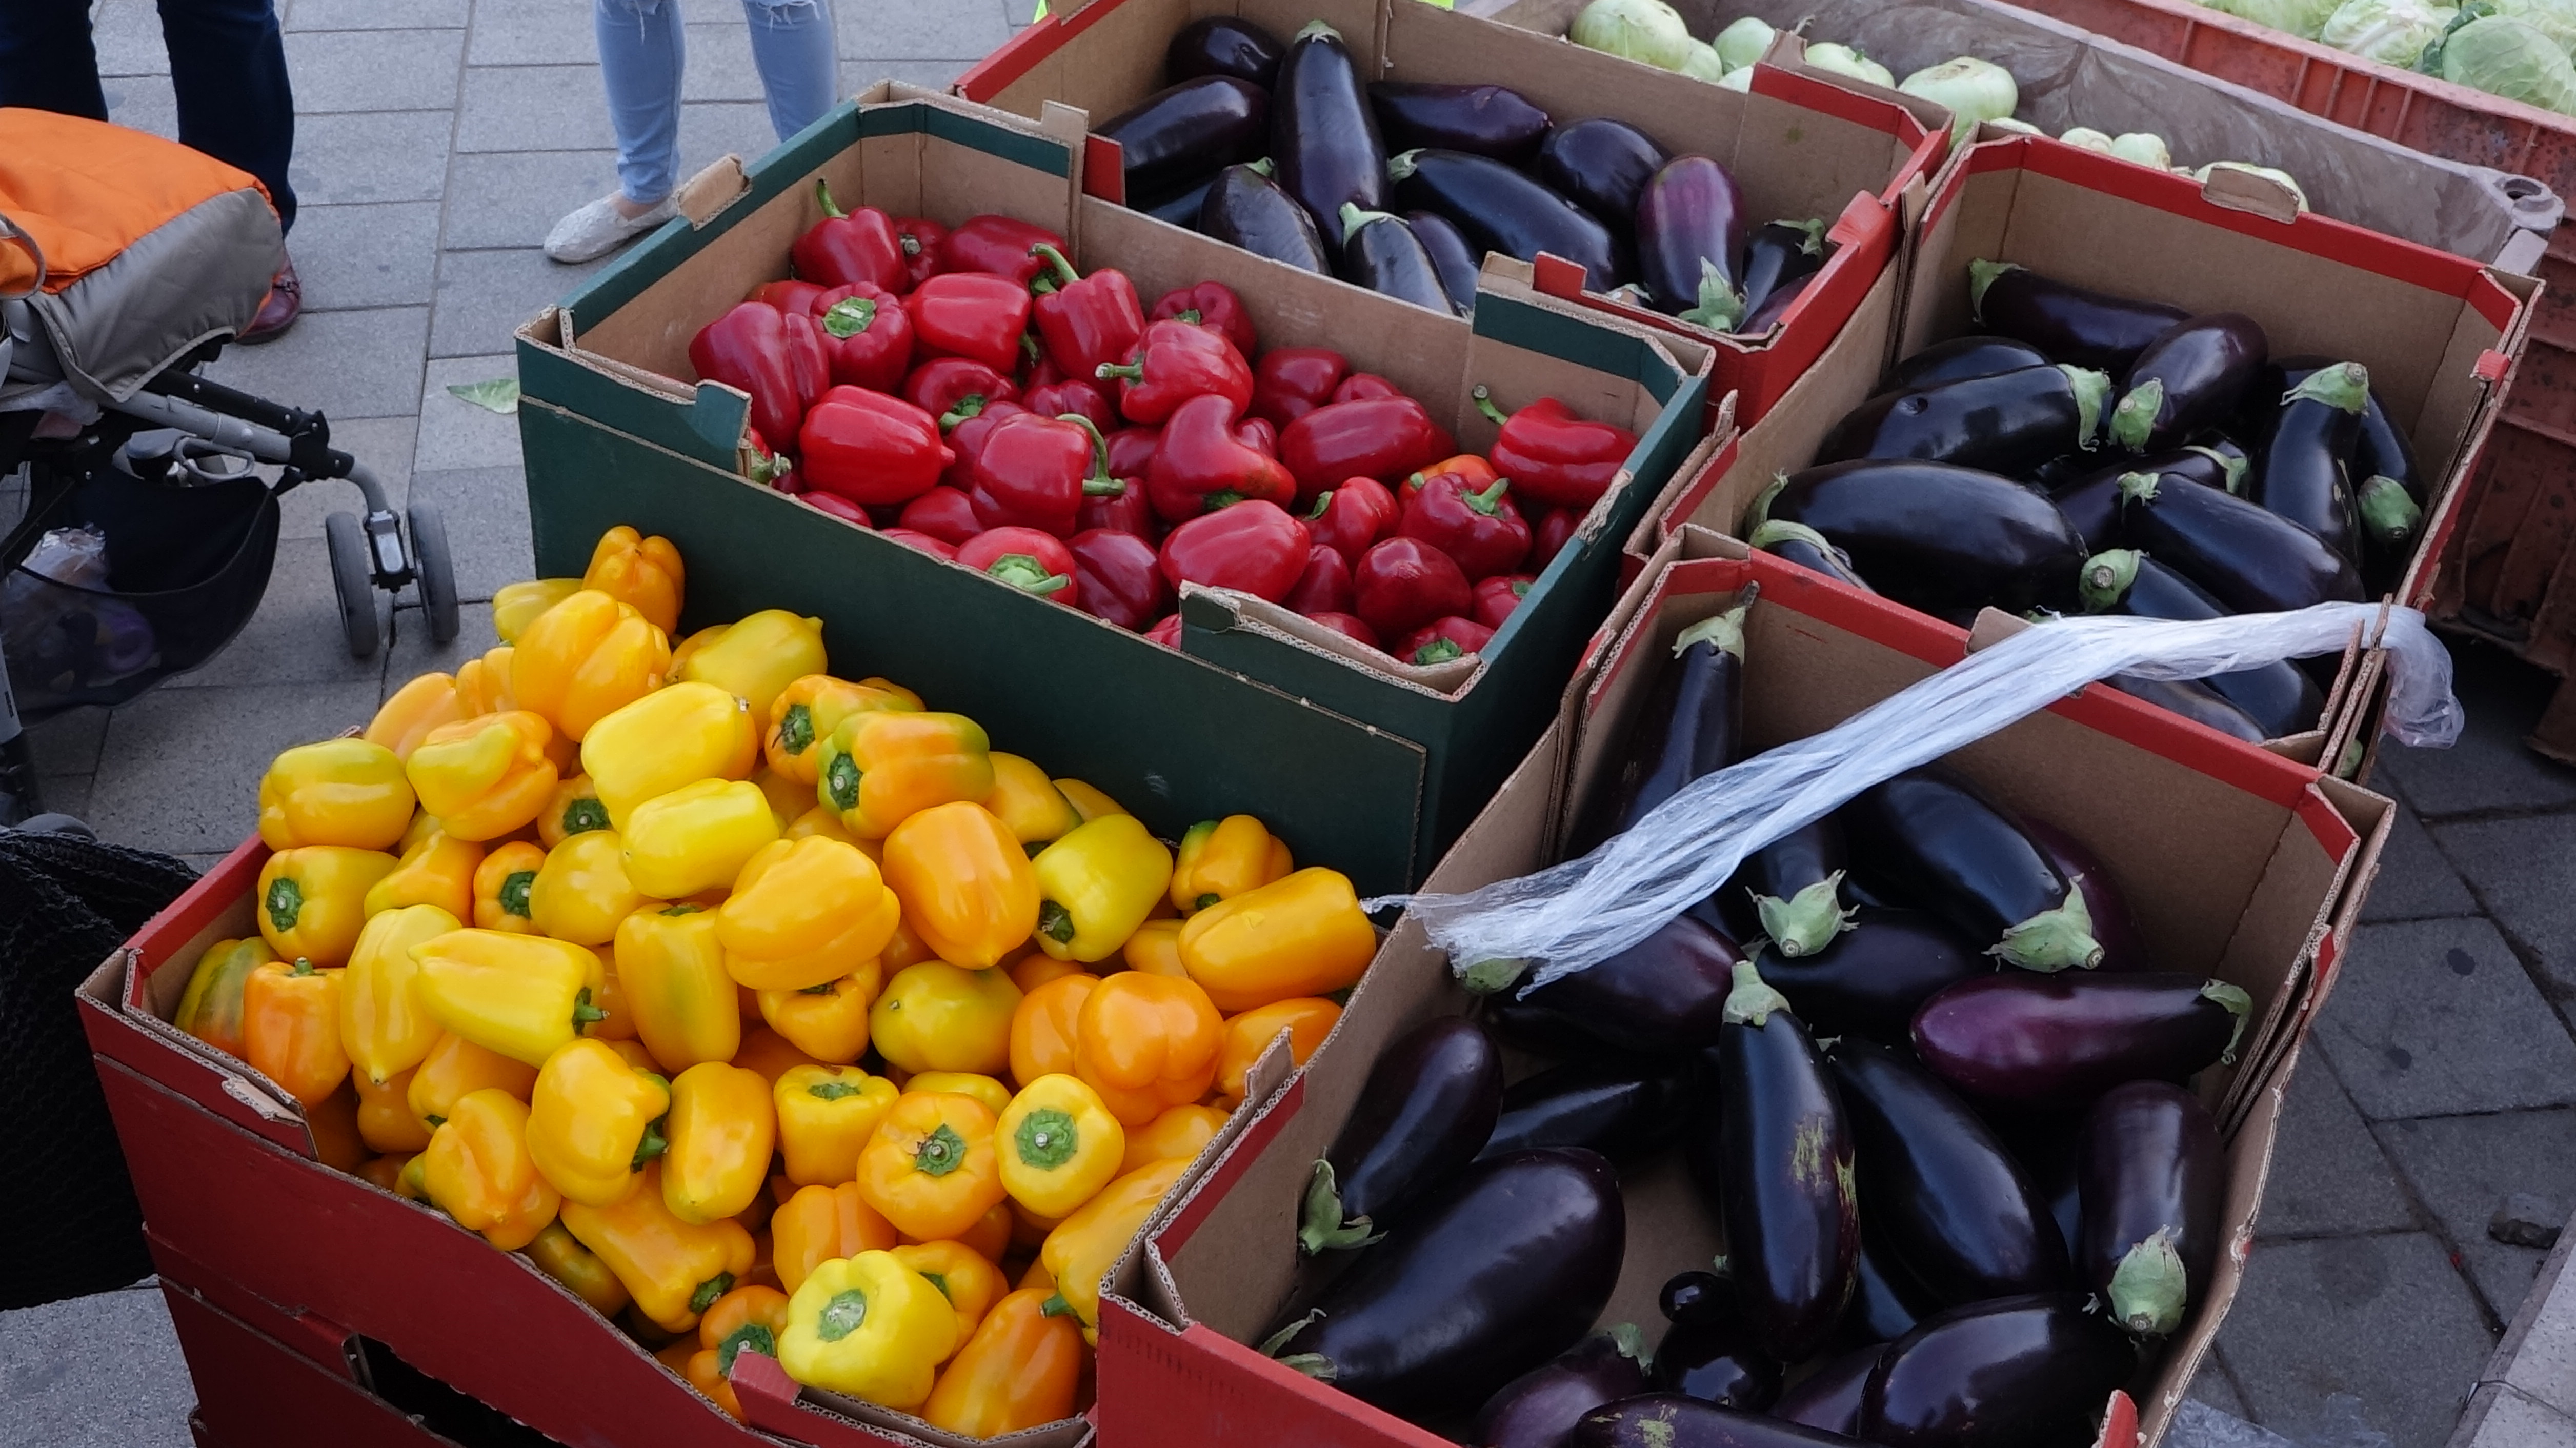 חלוקת ירקות בהפגנת החקלאים (צילום: אלון הוטר, באדיבות הברית הישראלית)